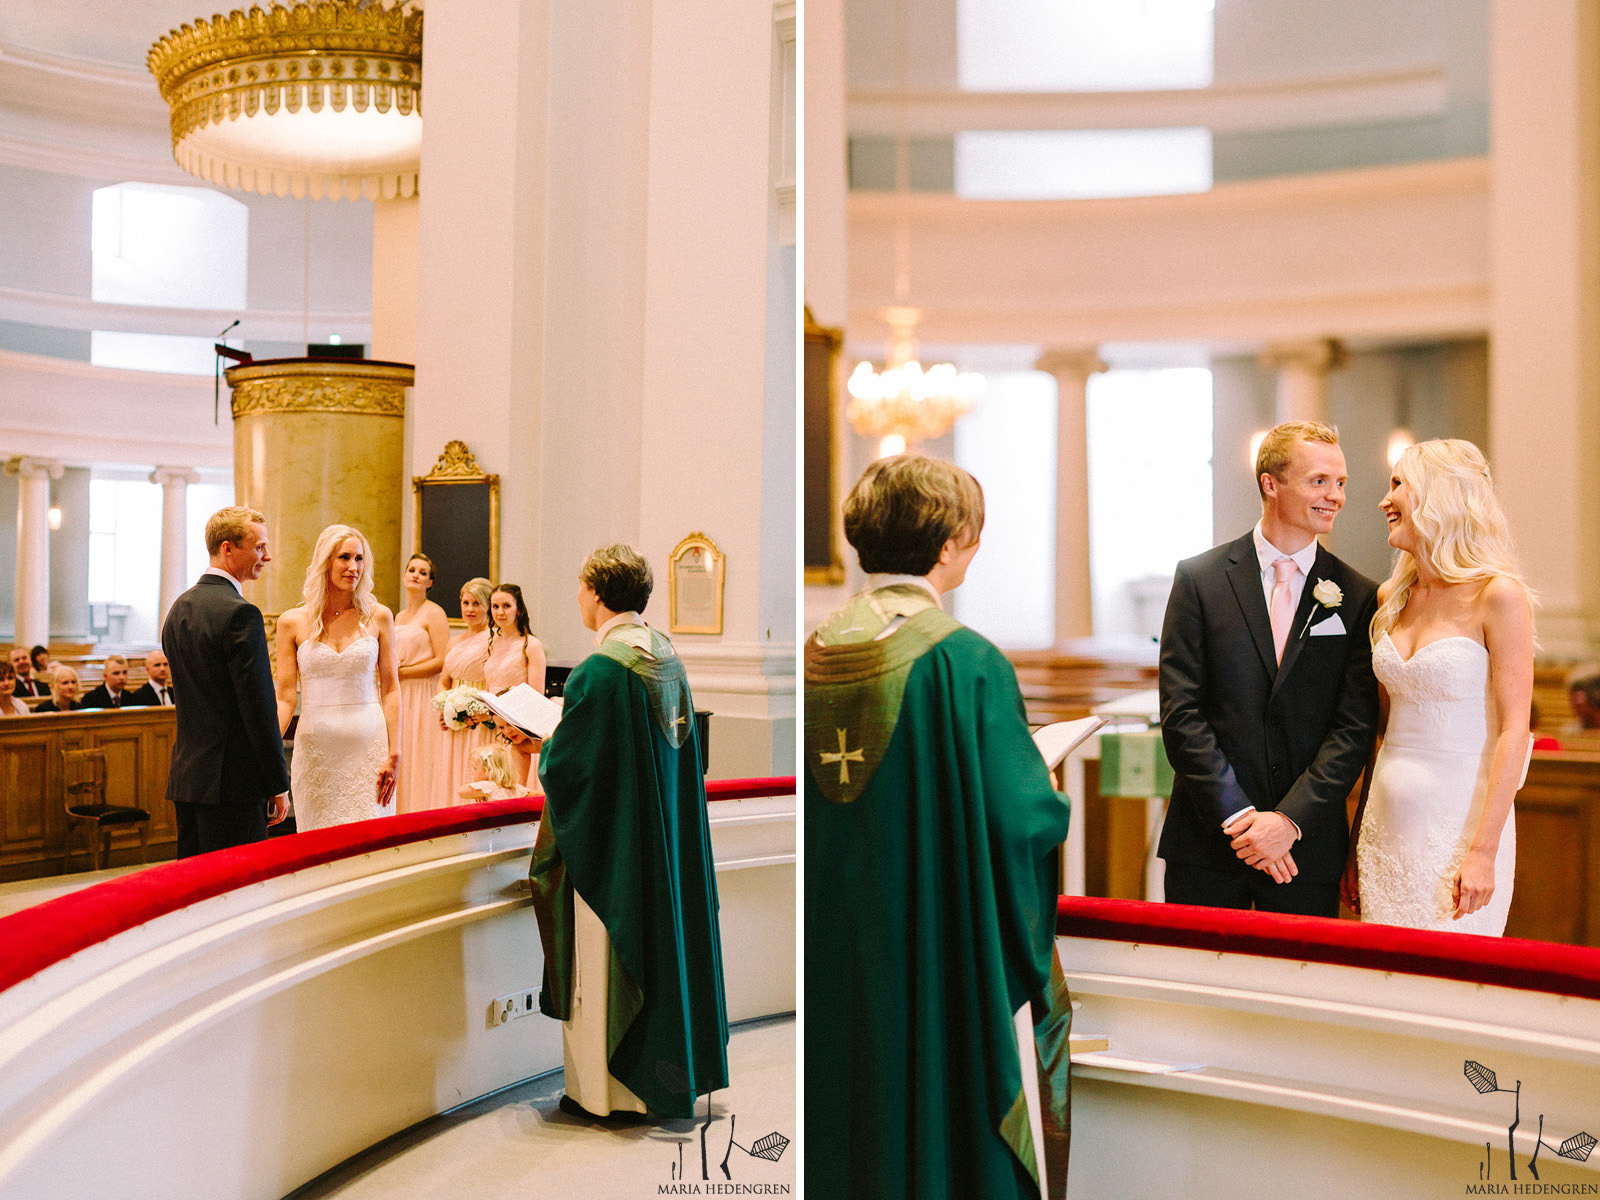 Helsinki tuomiokirkko wedding